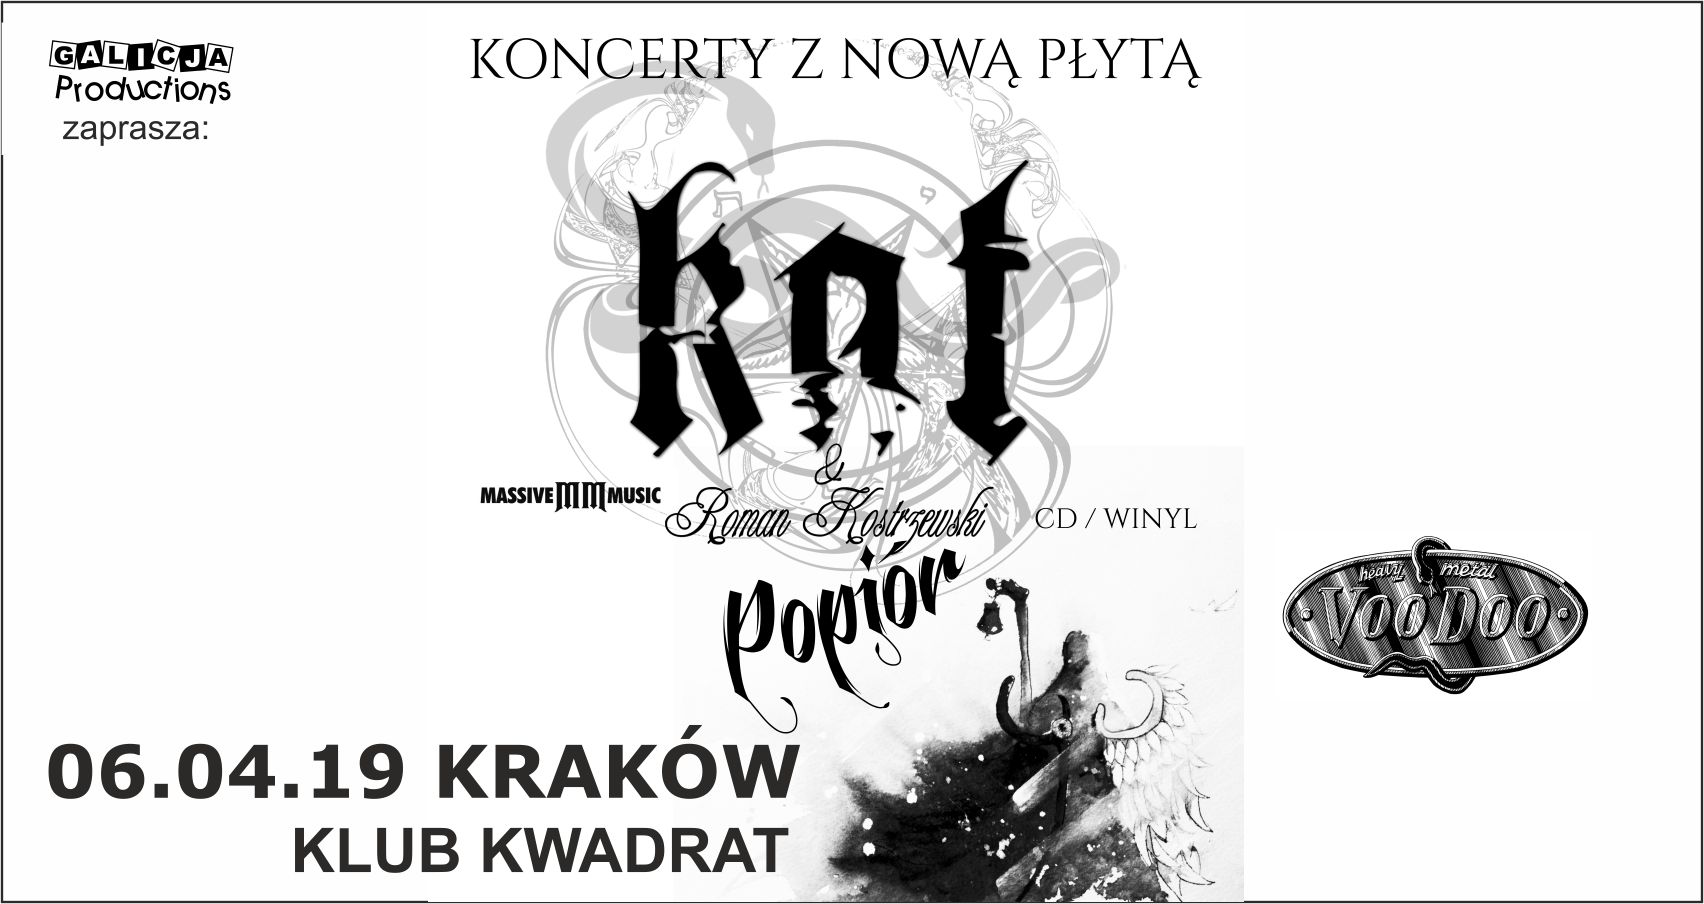 Kultowy muzyk wydaje nową płytę i zagra koncert w Krakowie!